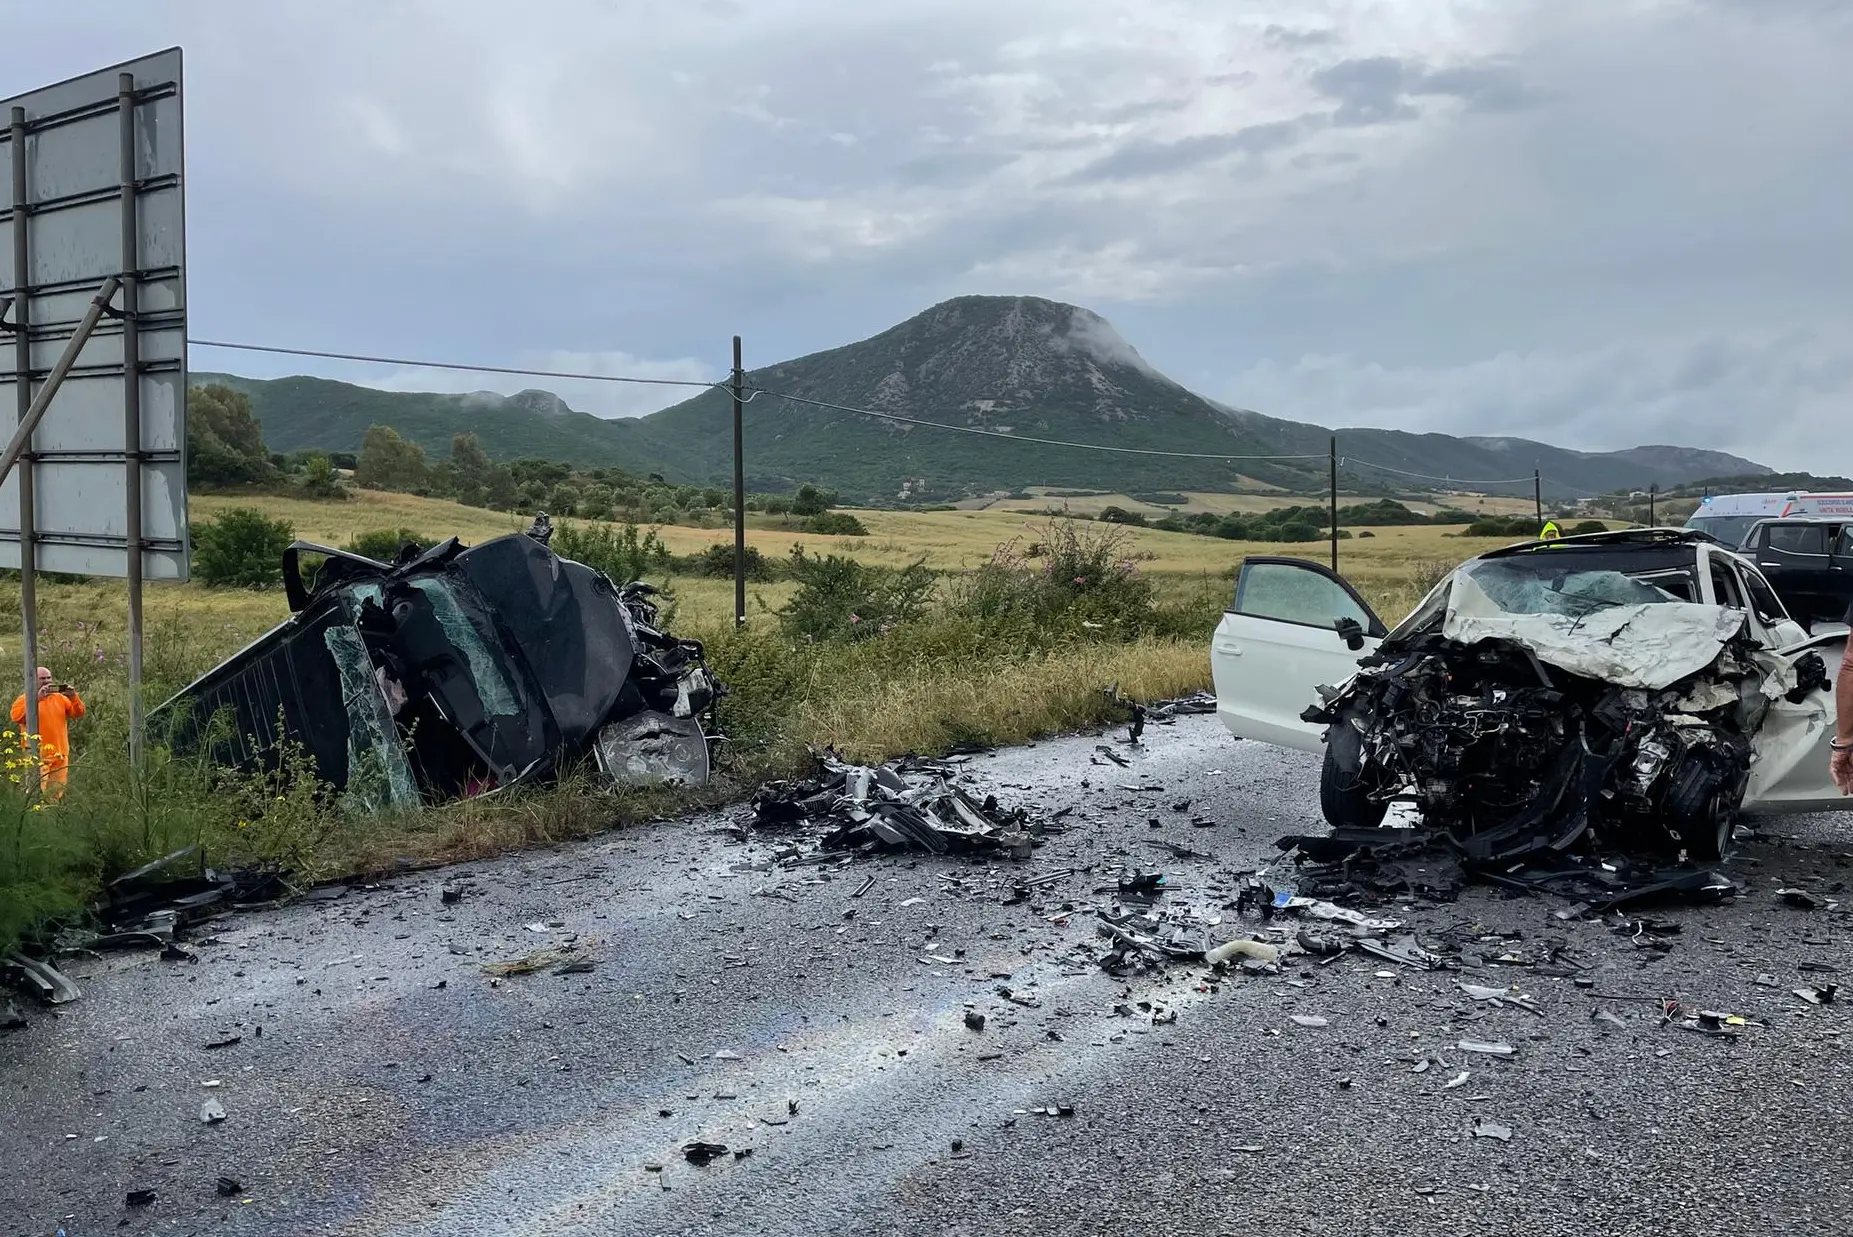 Le auto distrutte nell'incidente sulla Provinciale 2 (Fabio Murru)